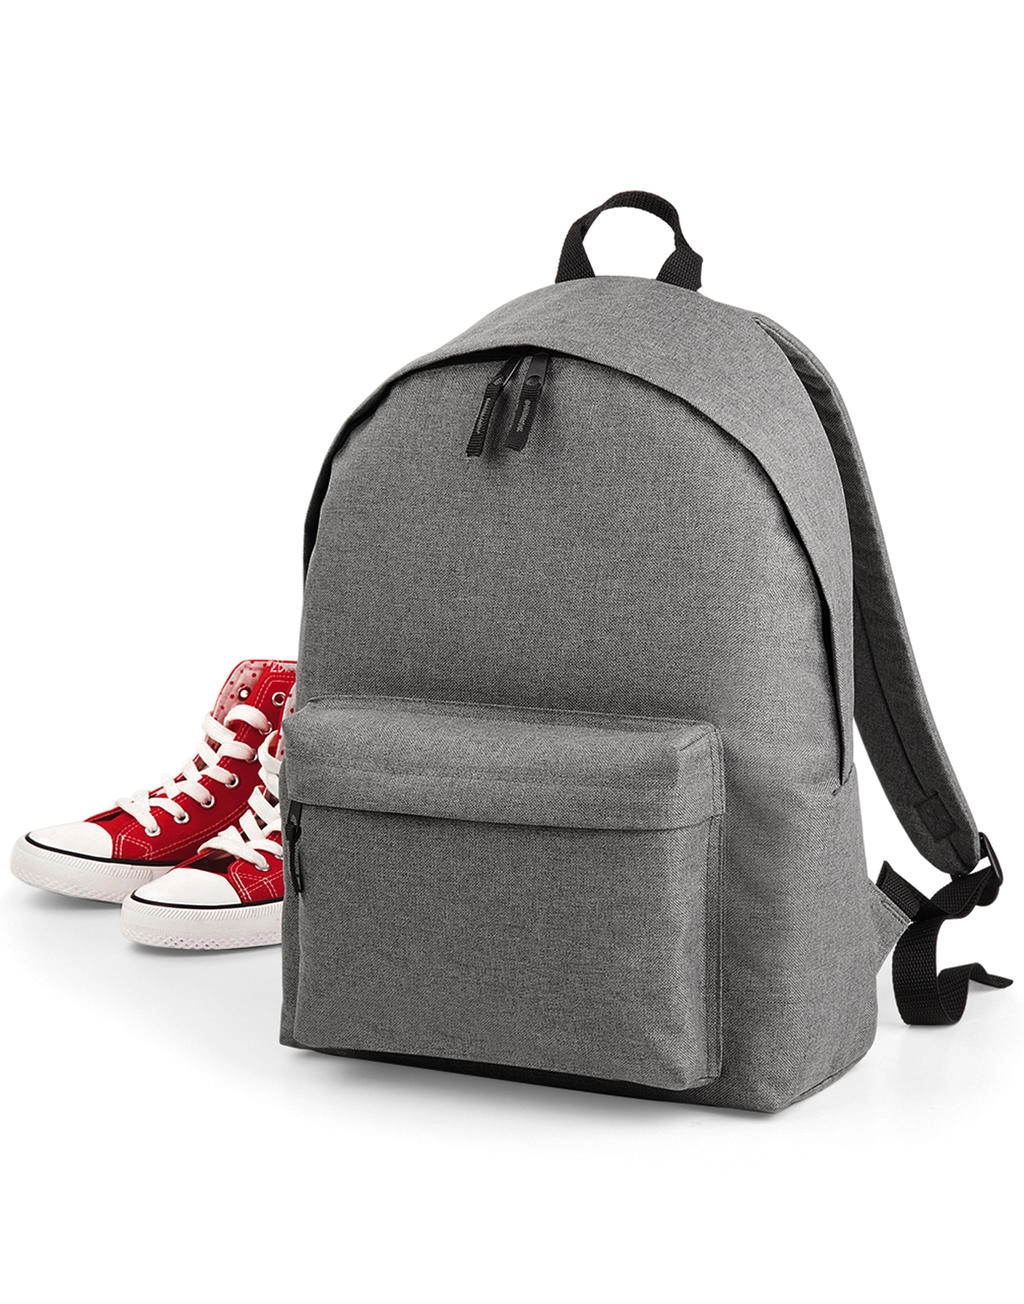 Two-Tone Fashion Backpack zum Besticken und Bedrucken mit Ihren Logo, Schriftzug oder Motiv.